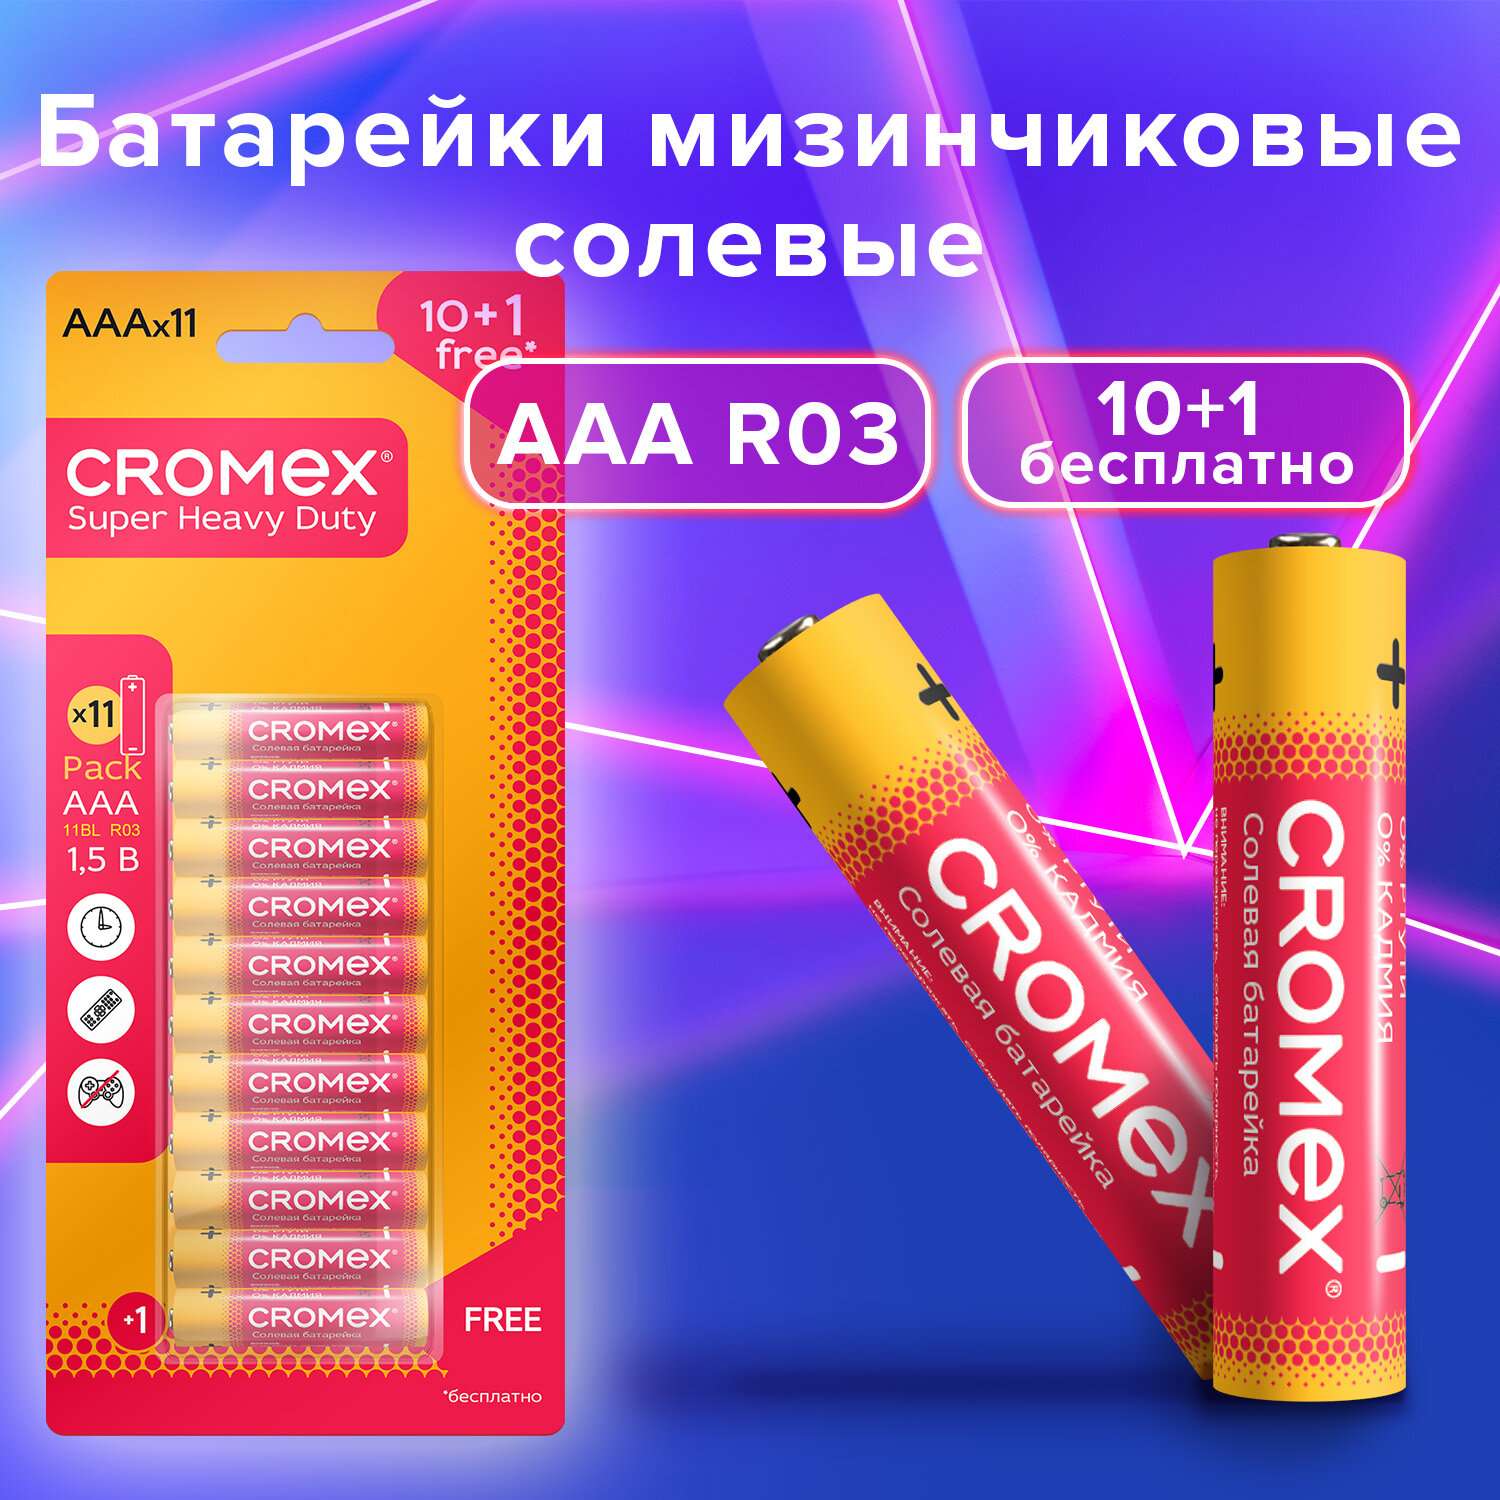 Батарейки солевые CROMEX мизинчиковые AAA набор 11 штук для весов часов фонарика - фото 2